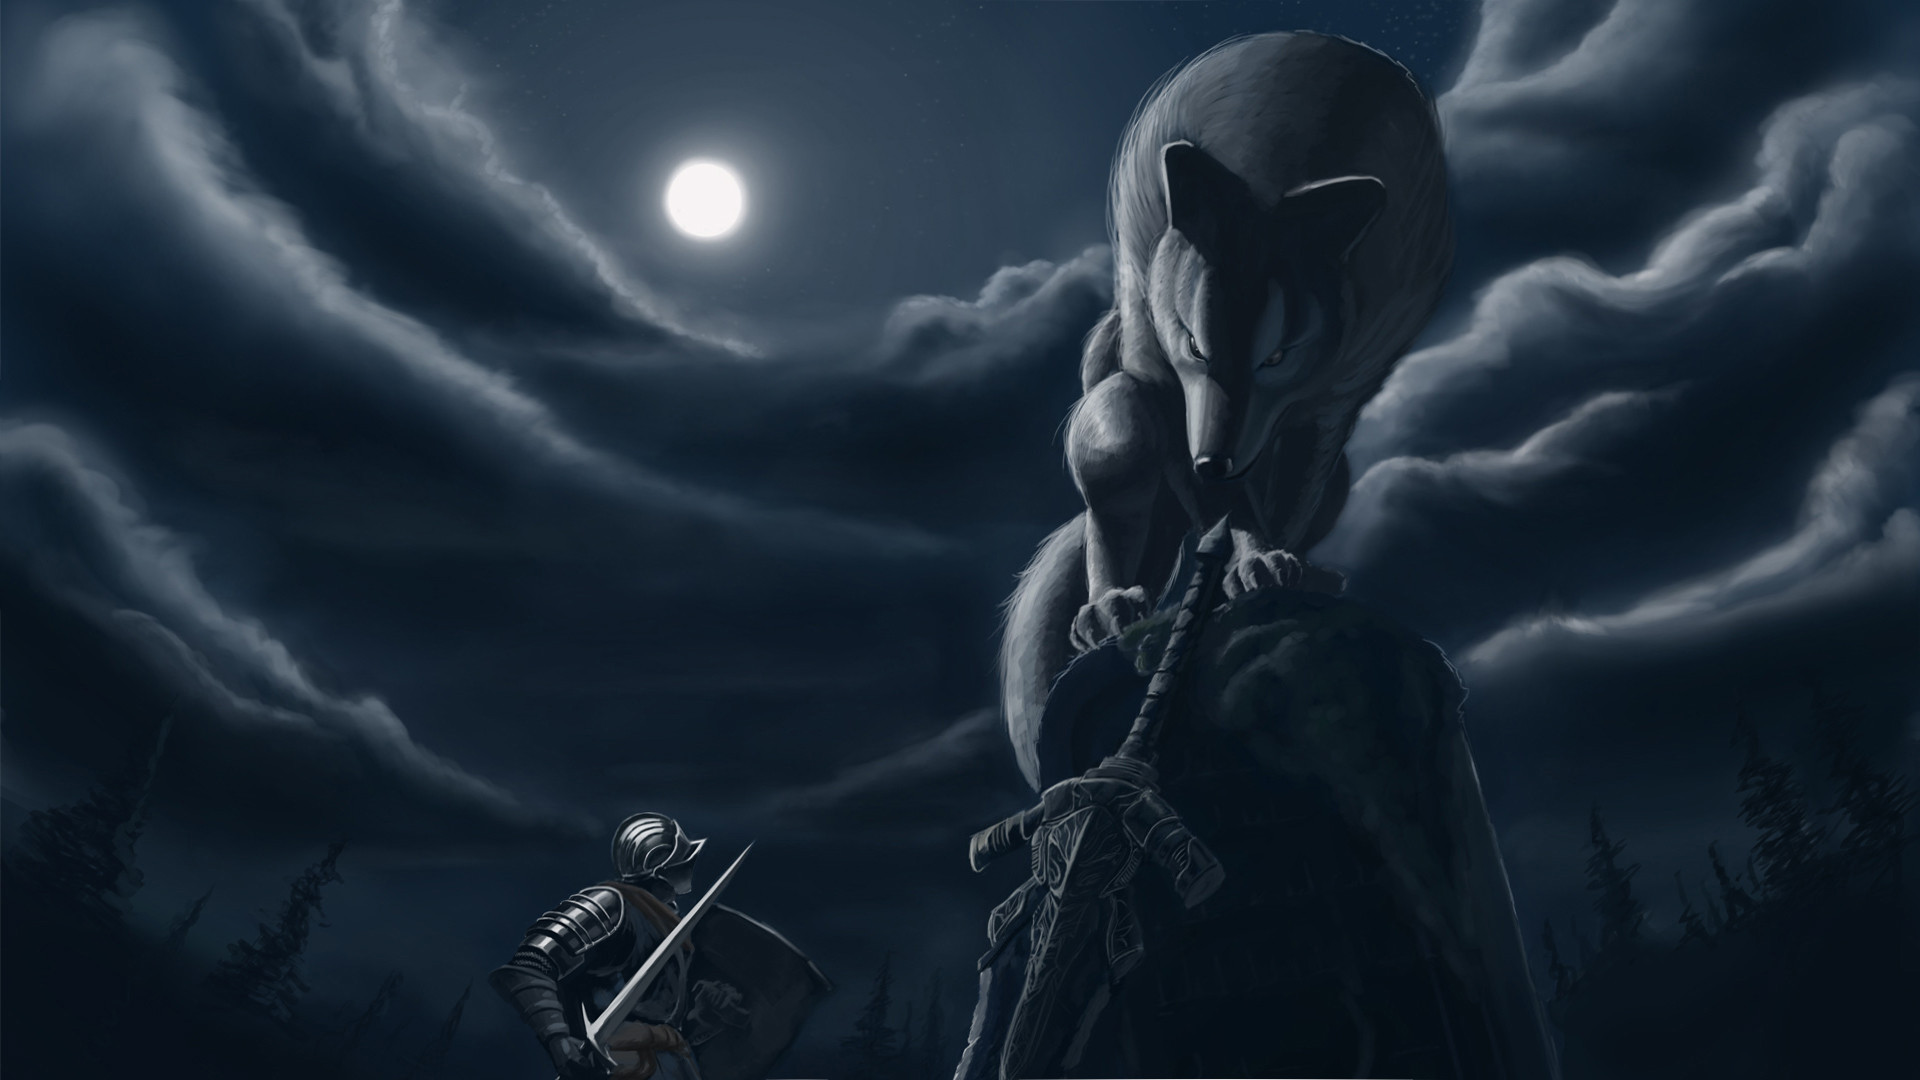 Dark Souls Puter Wallpaper Desktop Background Id